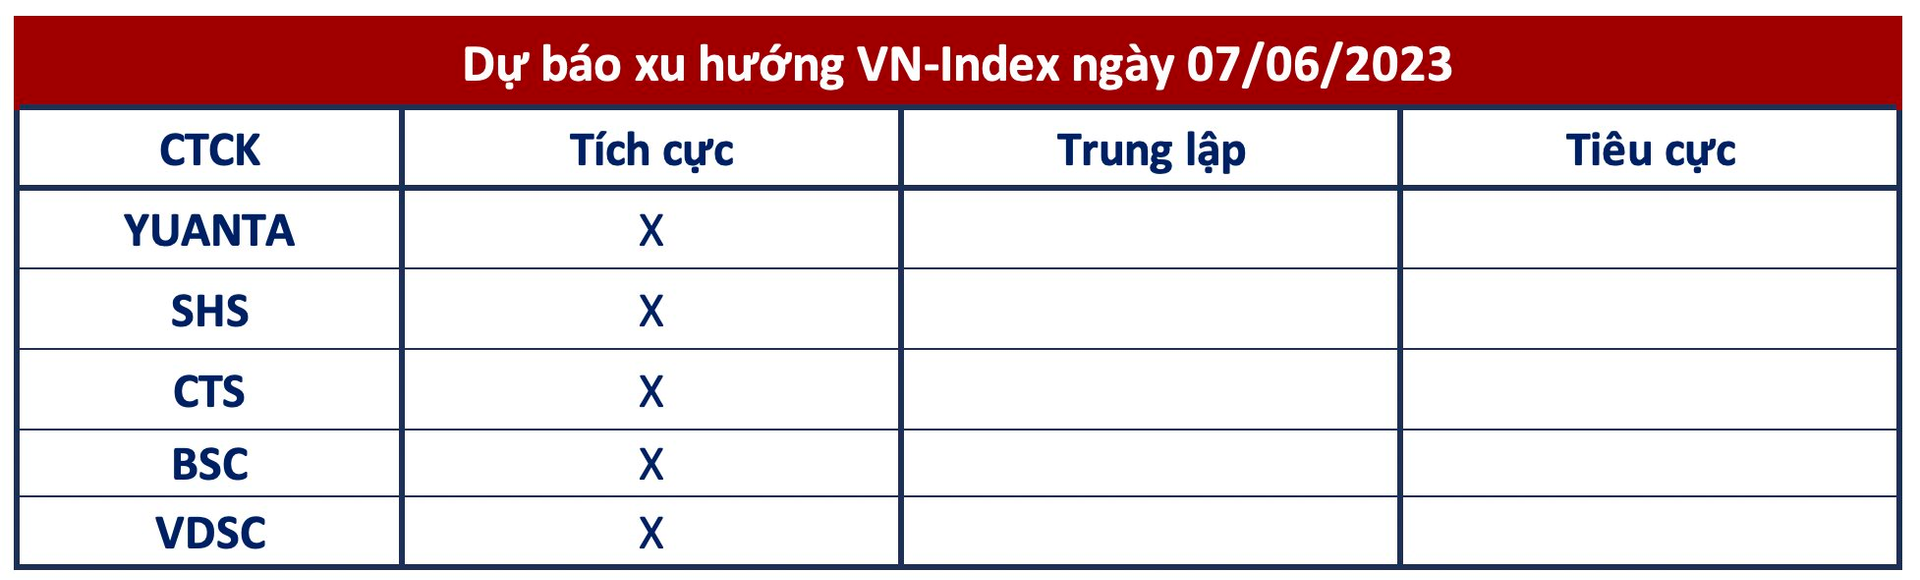 VN-Index đặt mục tiêu chinh phục 1.125 điểm, có thể tận dụng nhịp điều chỉnh để mua thêm